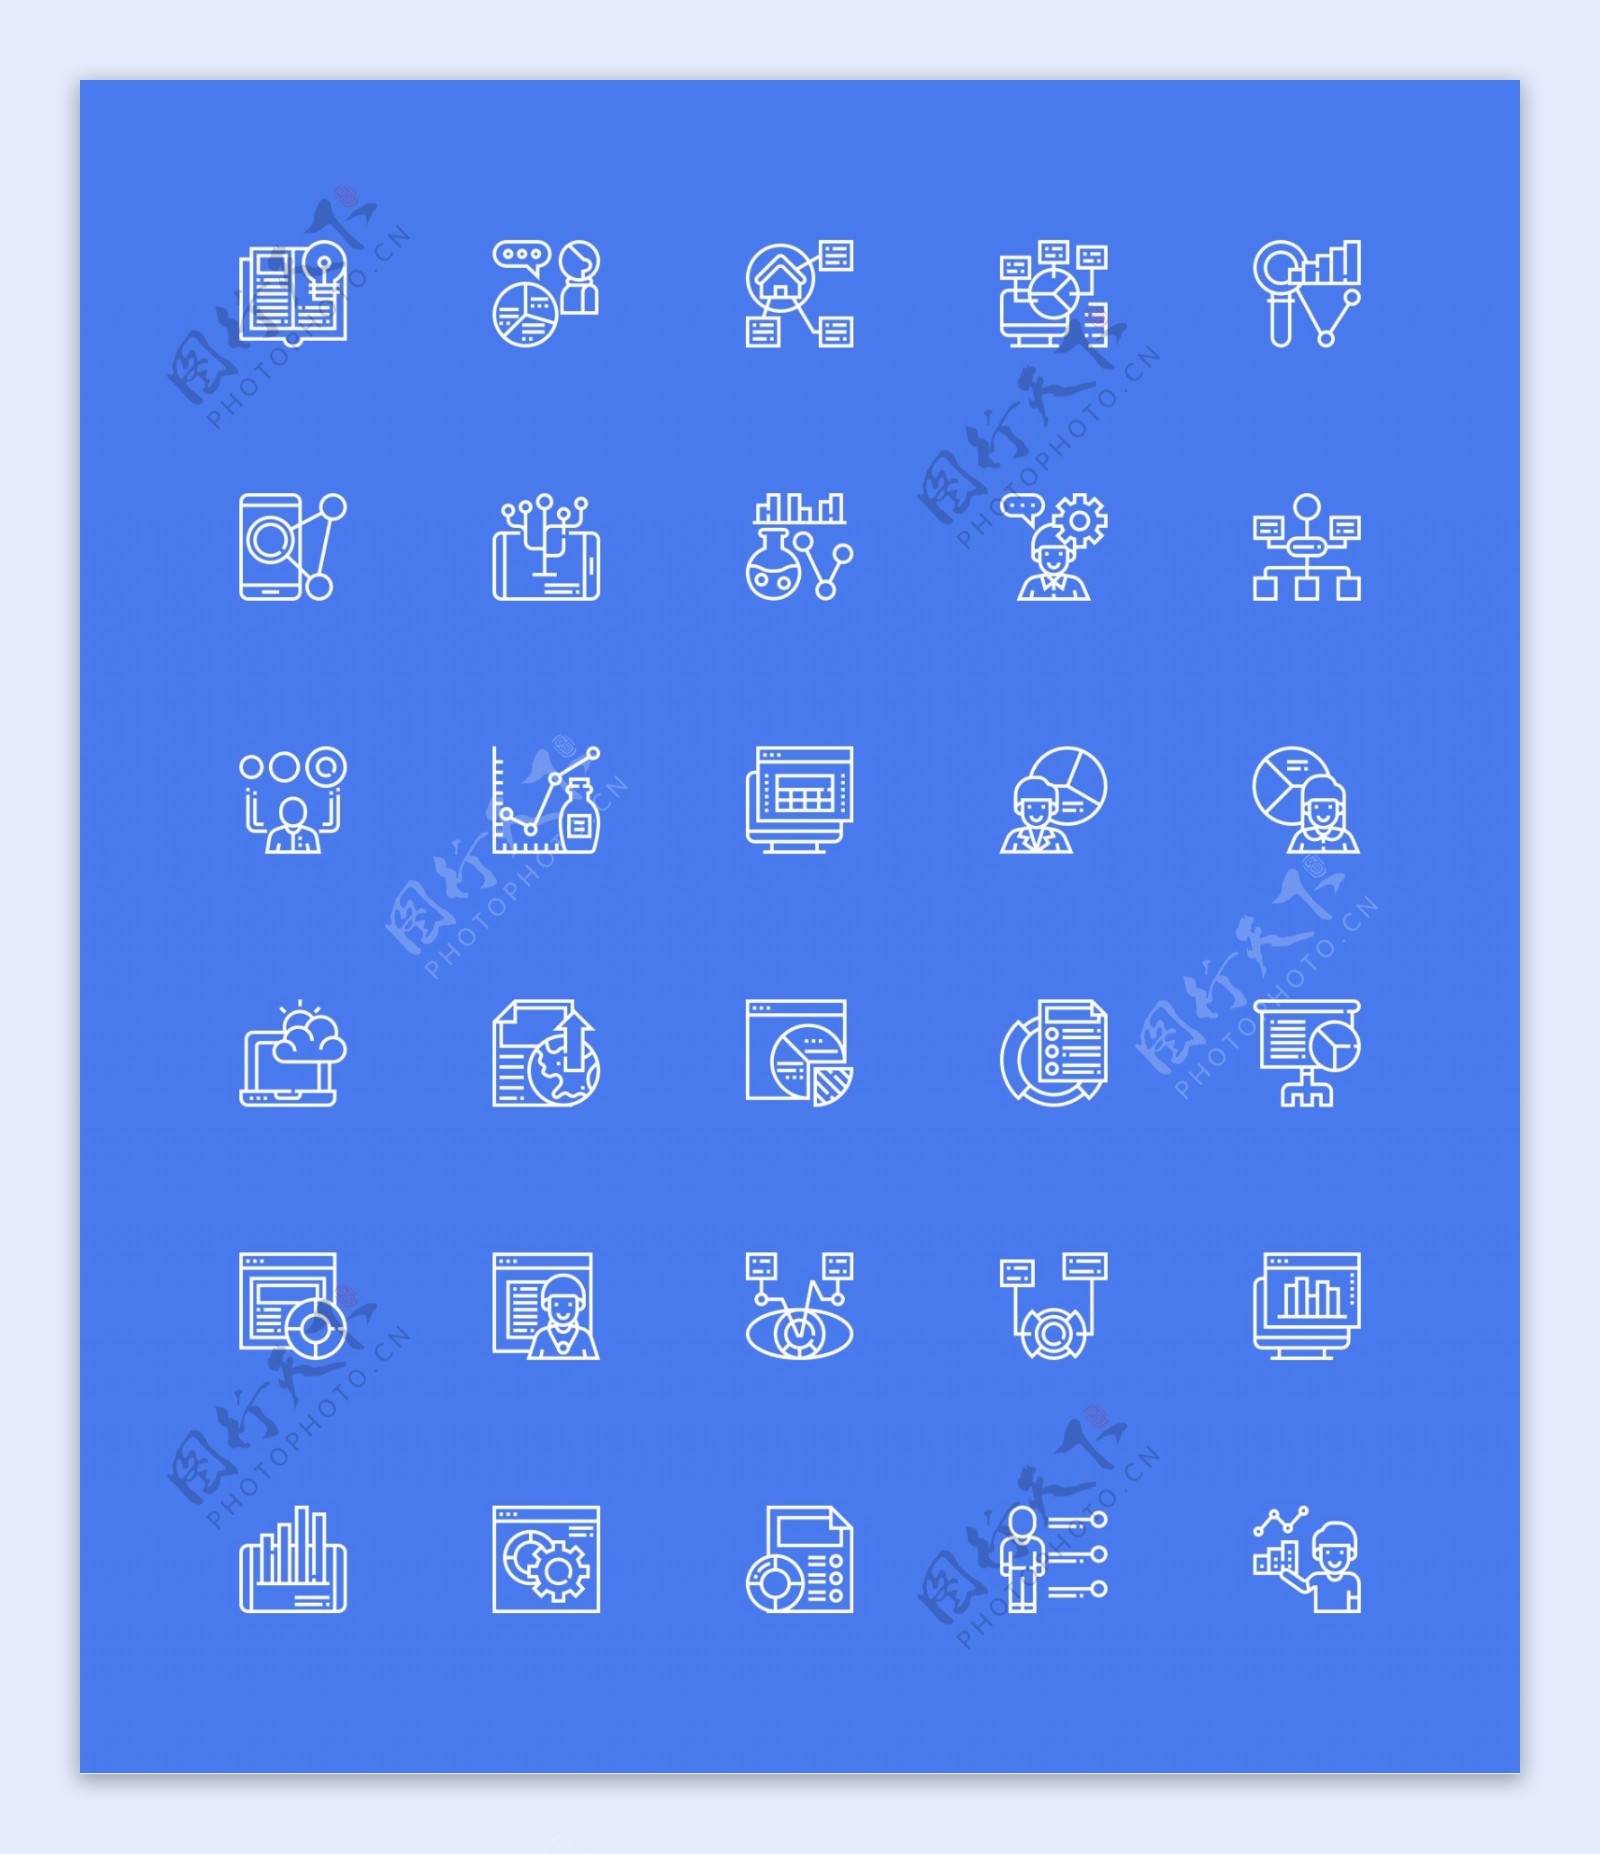 30款网络简洁单色icon矢量素材